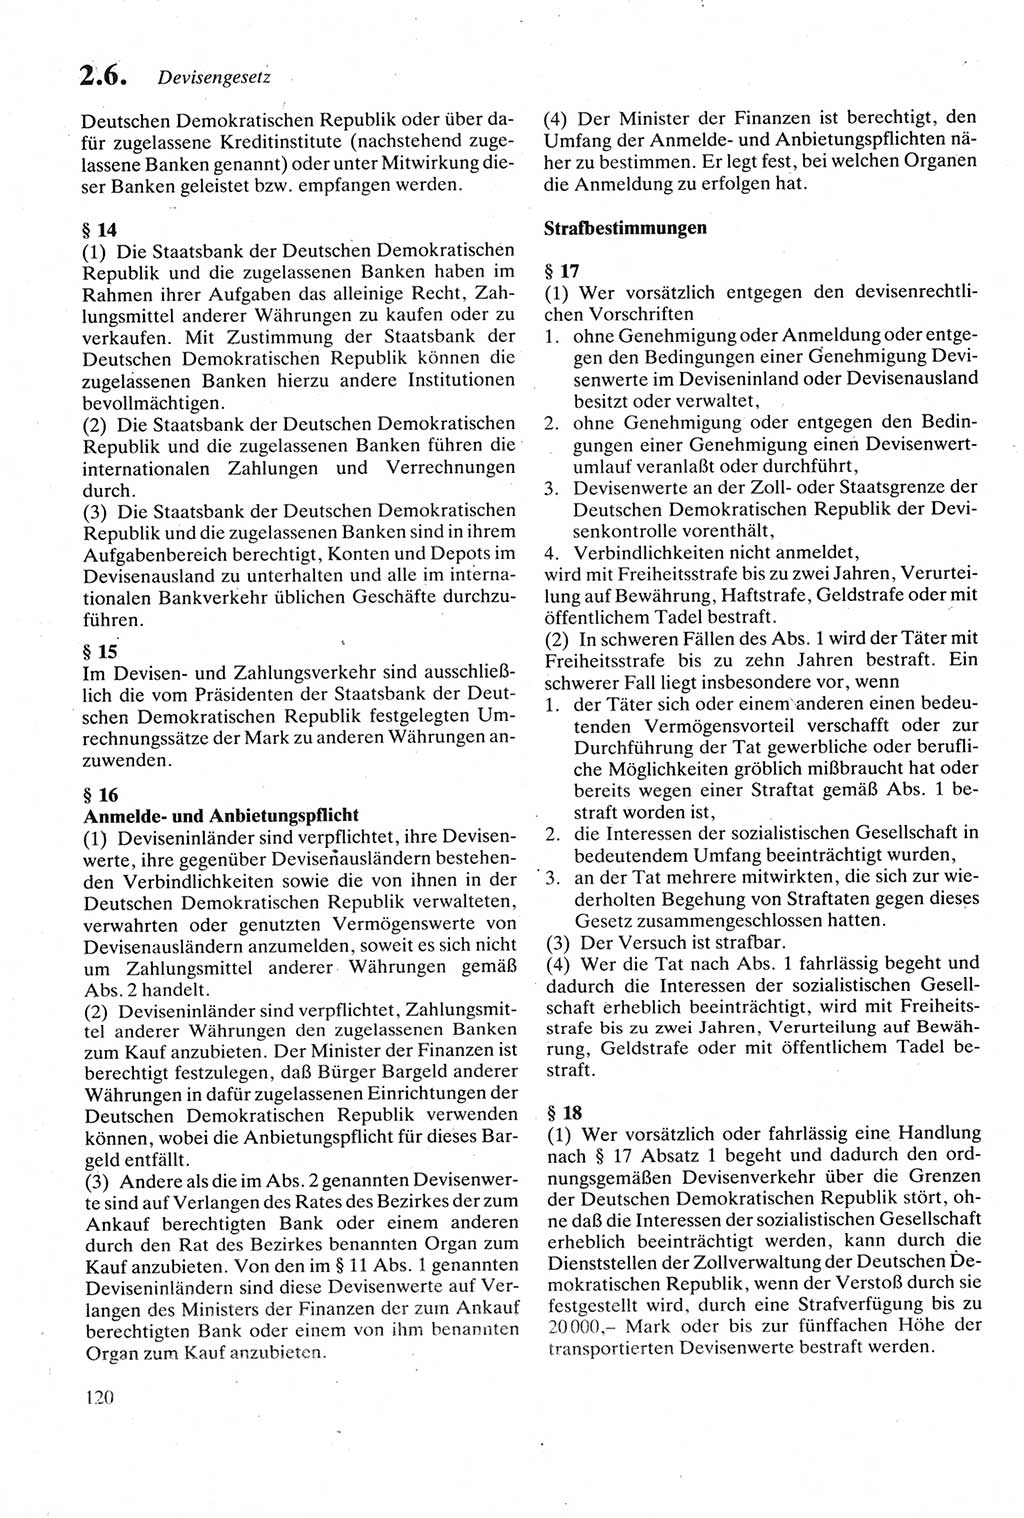 Strafgesetzbuch (StGB) der Deutschen Demokratischen Republik (DDR) sowie angrenzende Gesetze und Bestimmungen 1979, Seite 120 (StGB DDR Ges. Best. 1979, S. 120)